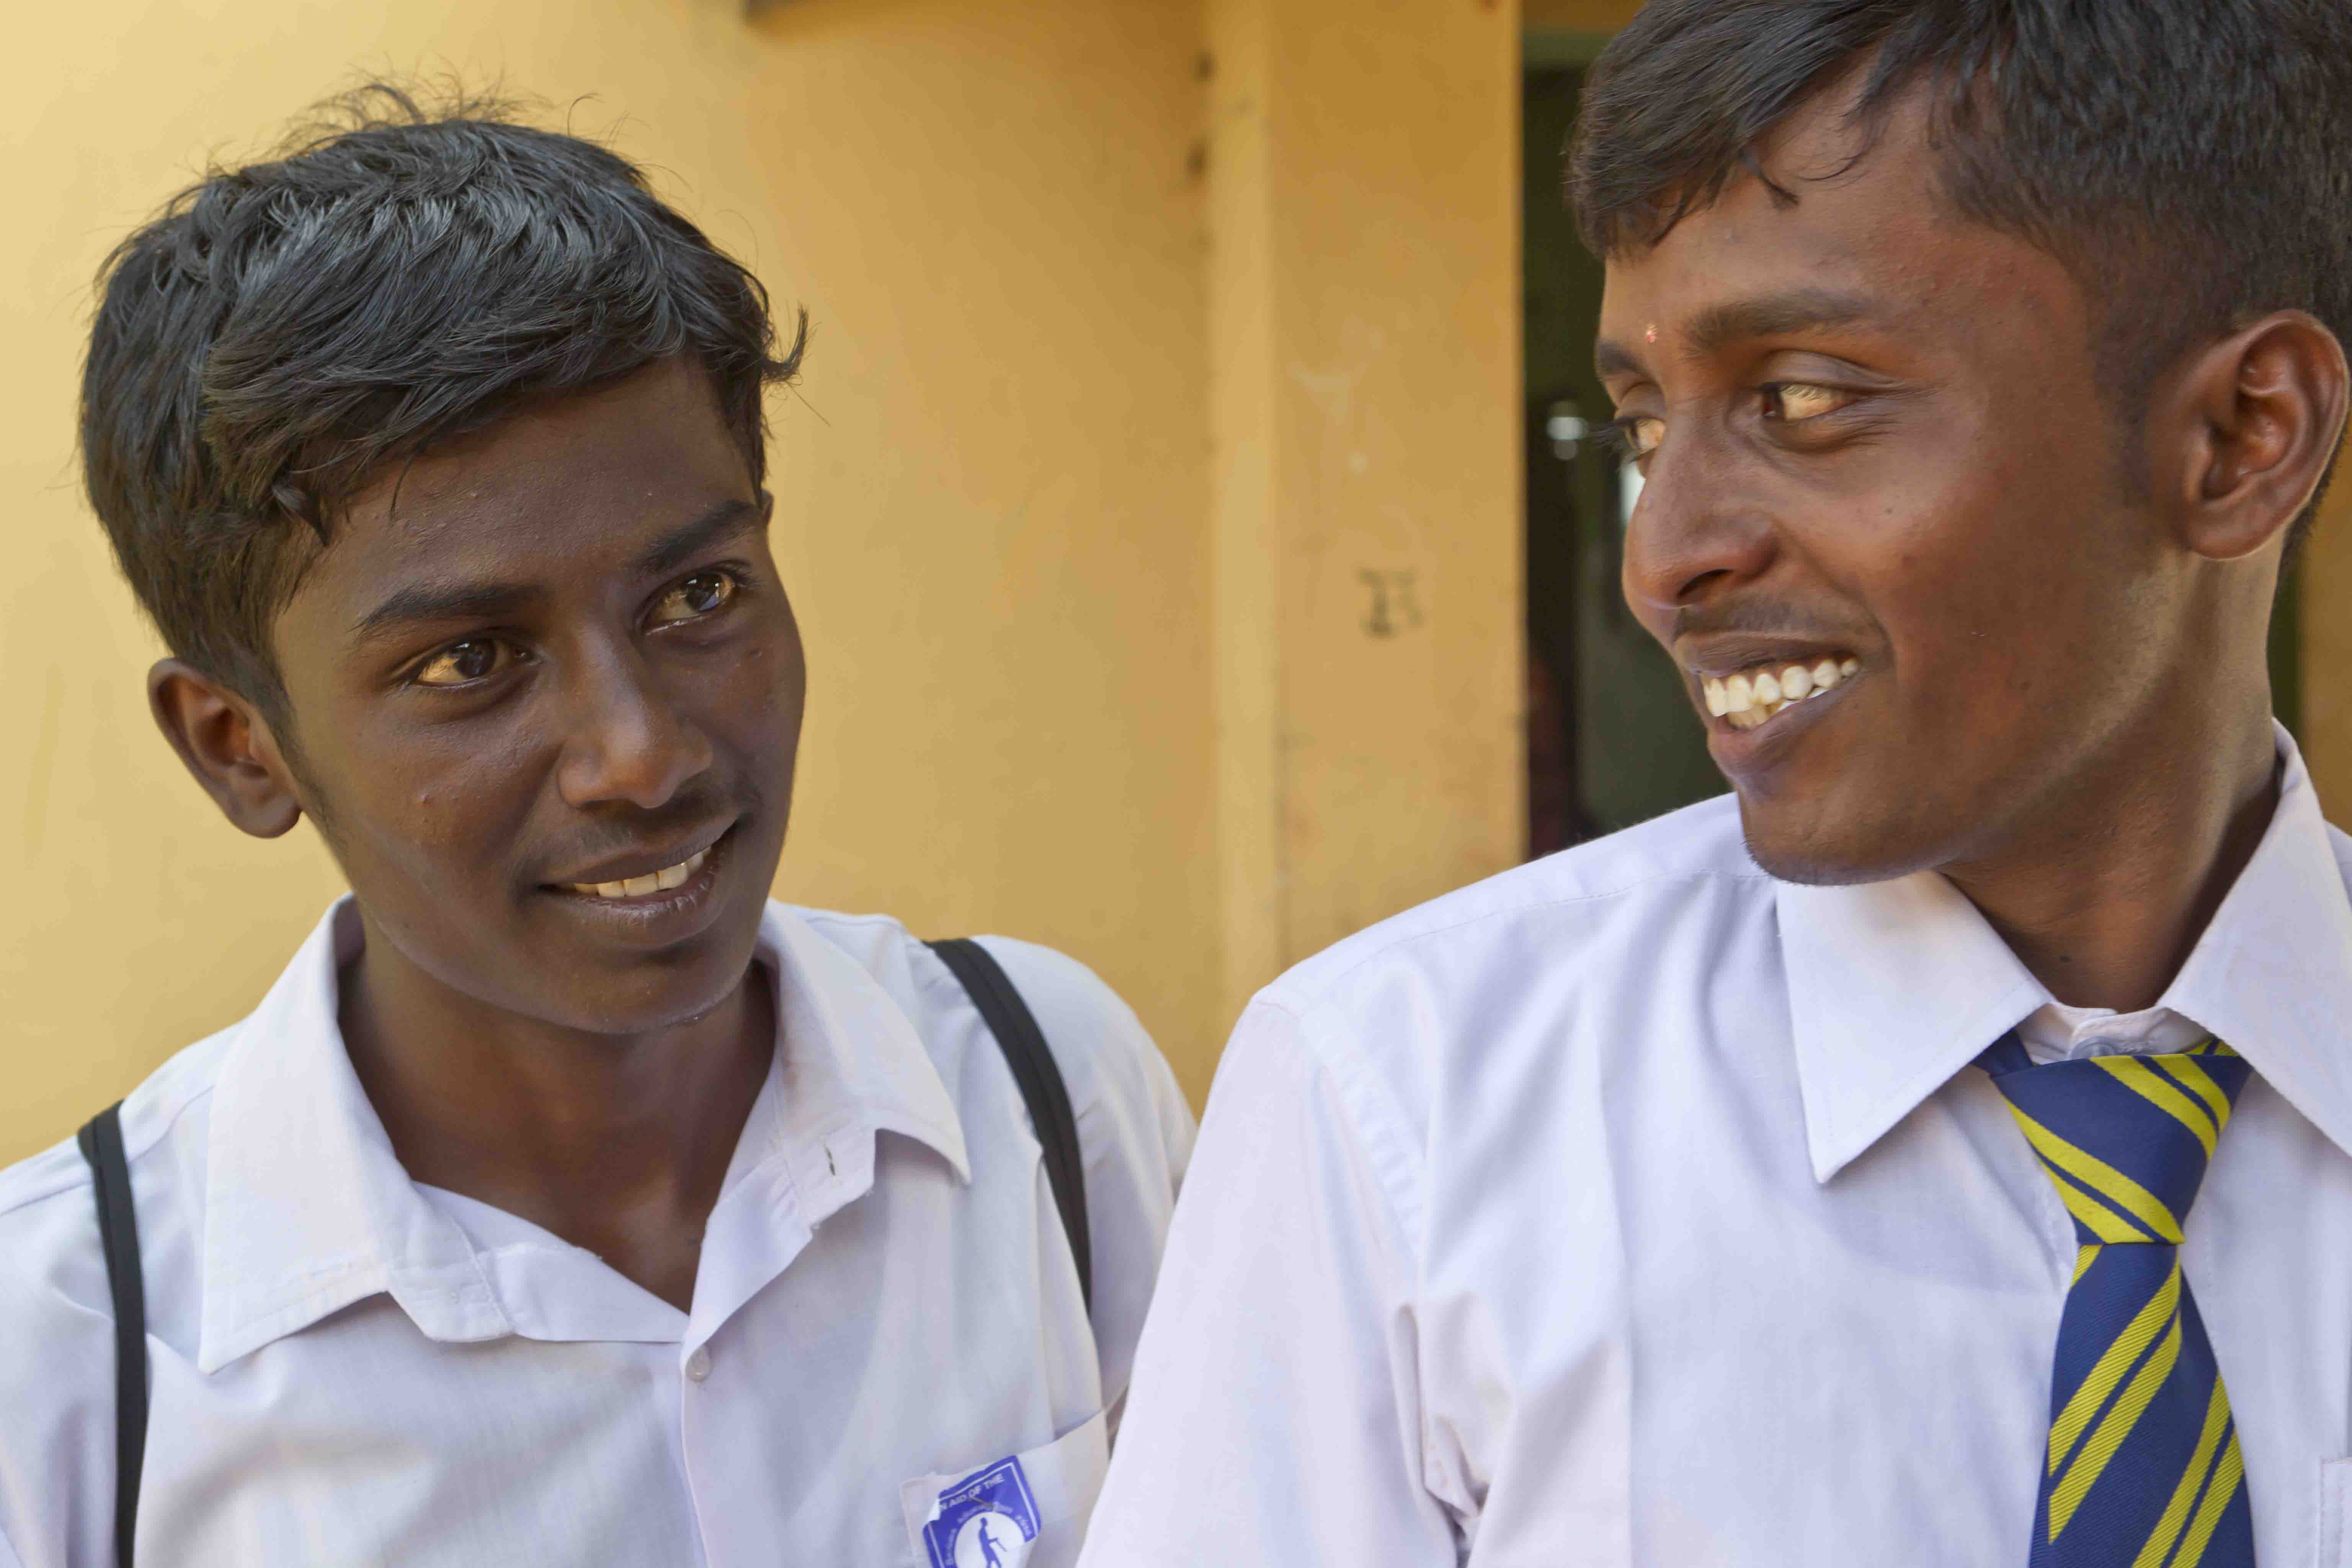 Two young men wearing school uniform 